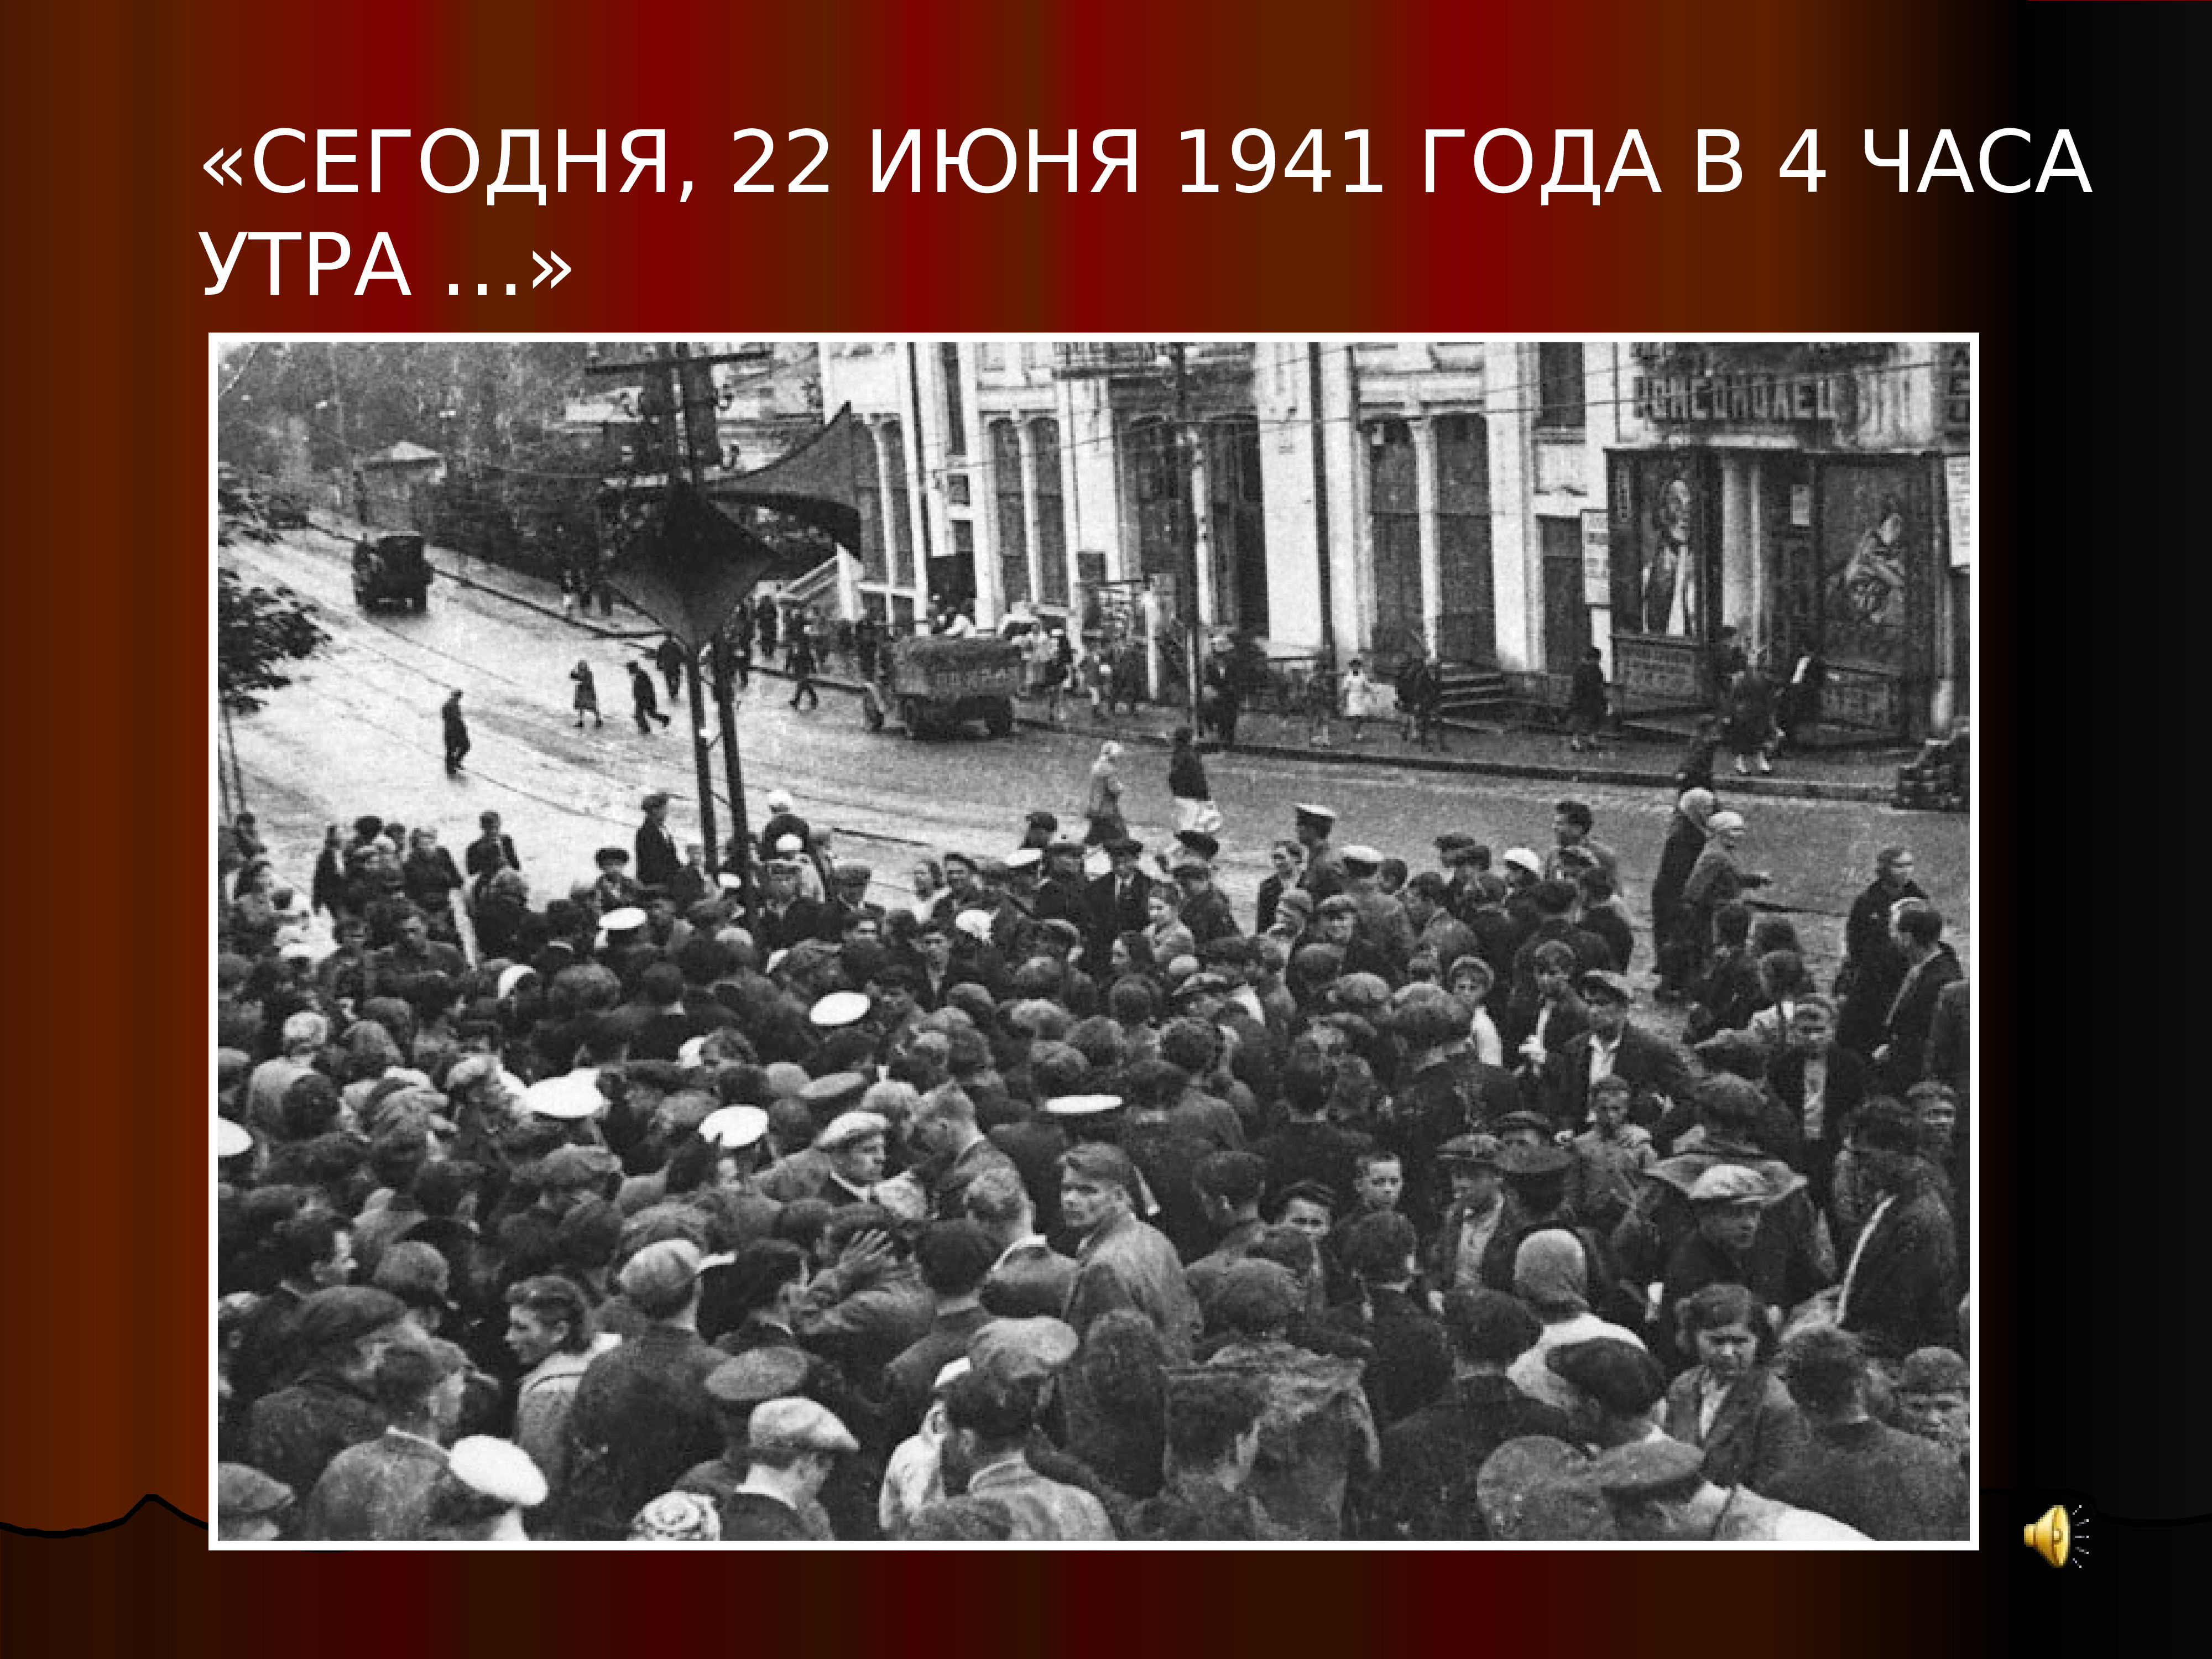 22 июня 1941 история. 22 Июня 1941 года начало Великой Отечественной войны 1941-1945. Начало ВОВ 1941 года.